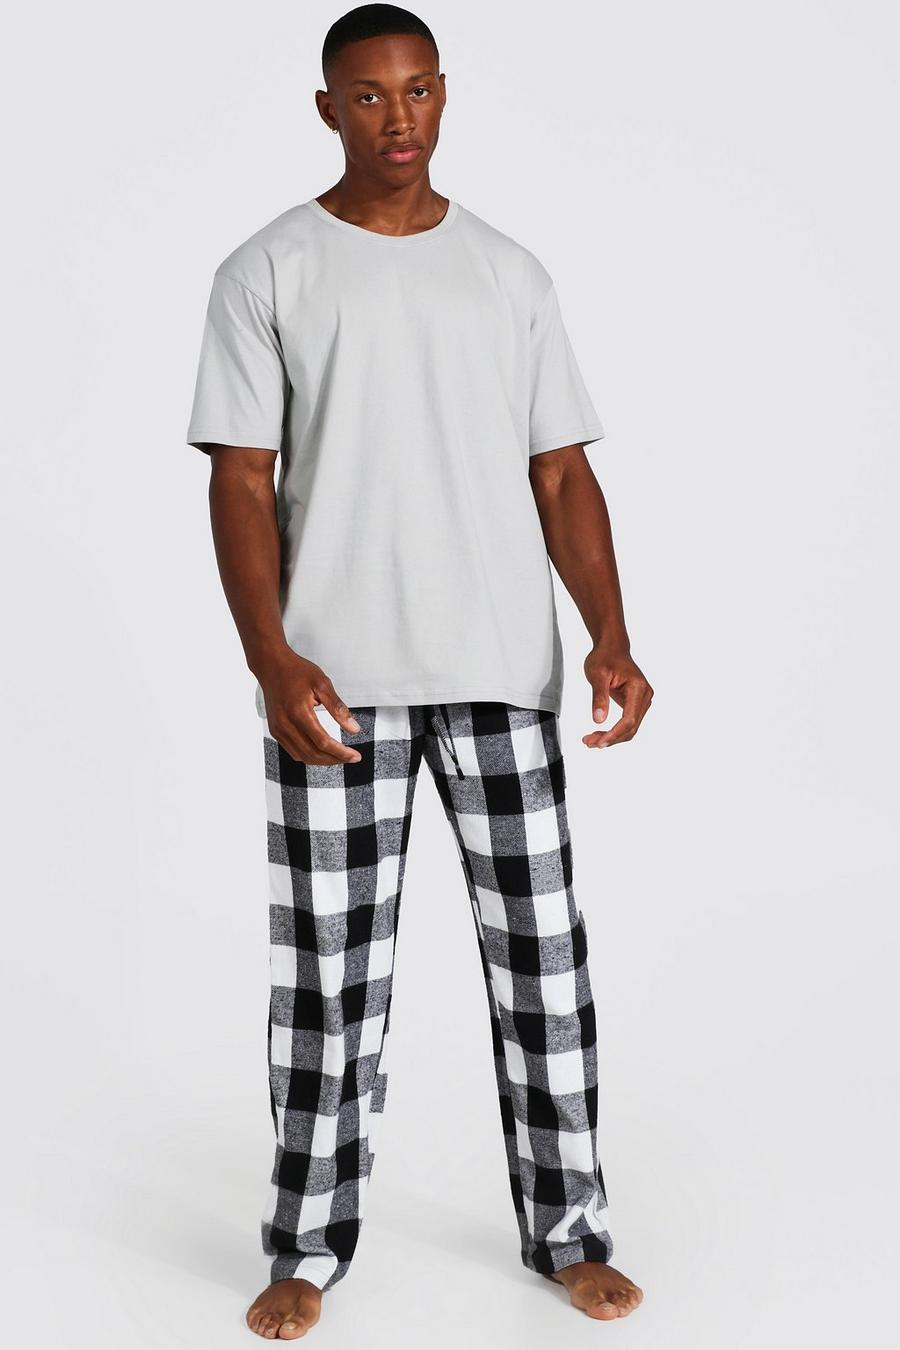 Black Woven Check Pyjama Bottoms And T-shirt Set